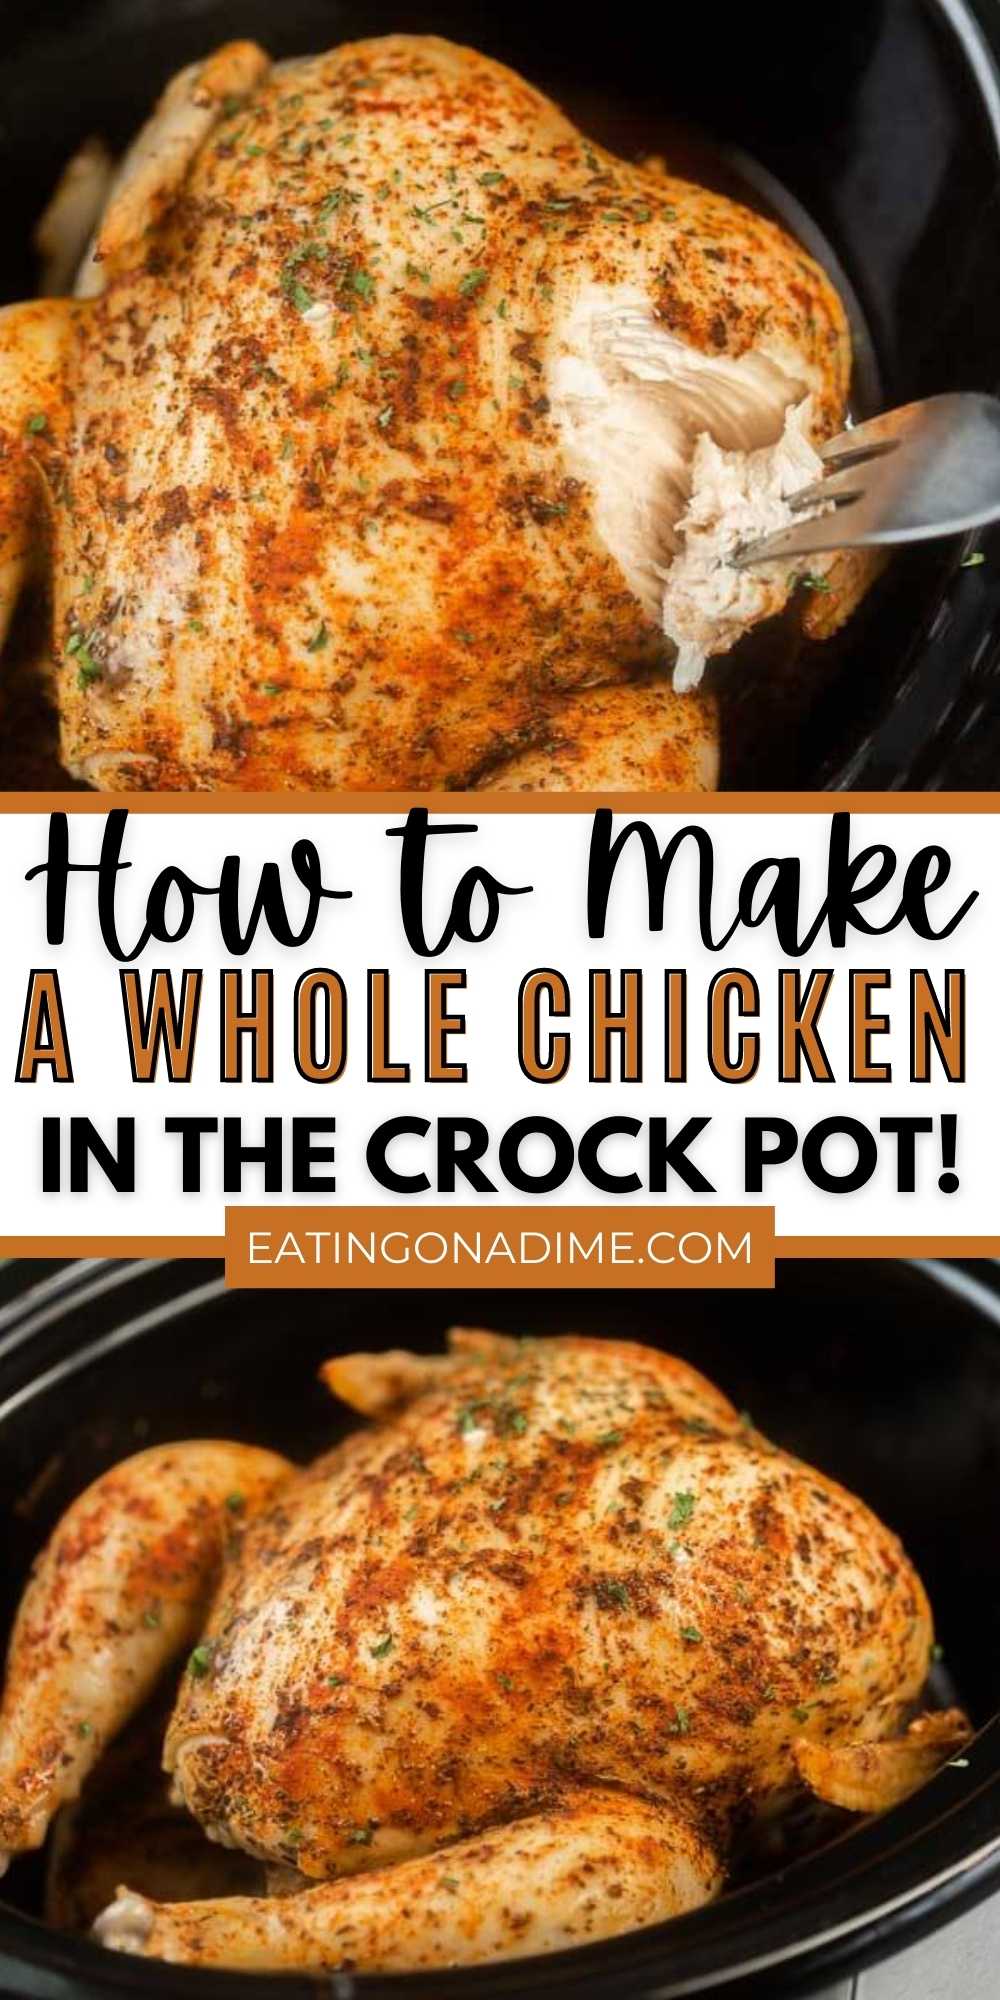 Crockpot Whole Chicken - The Little Kitchen